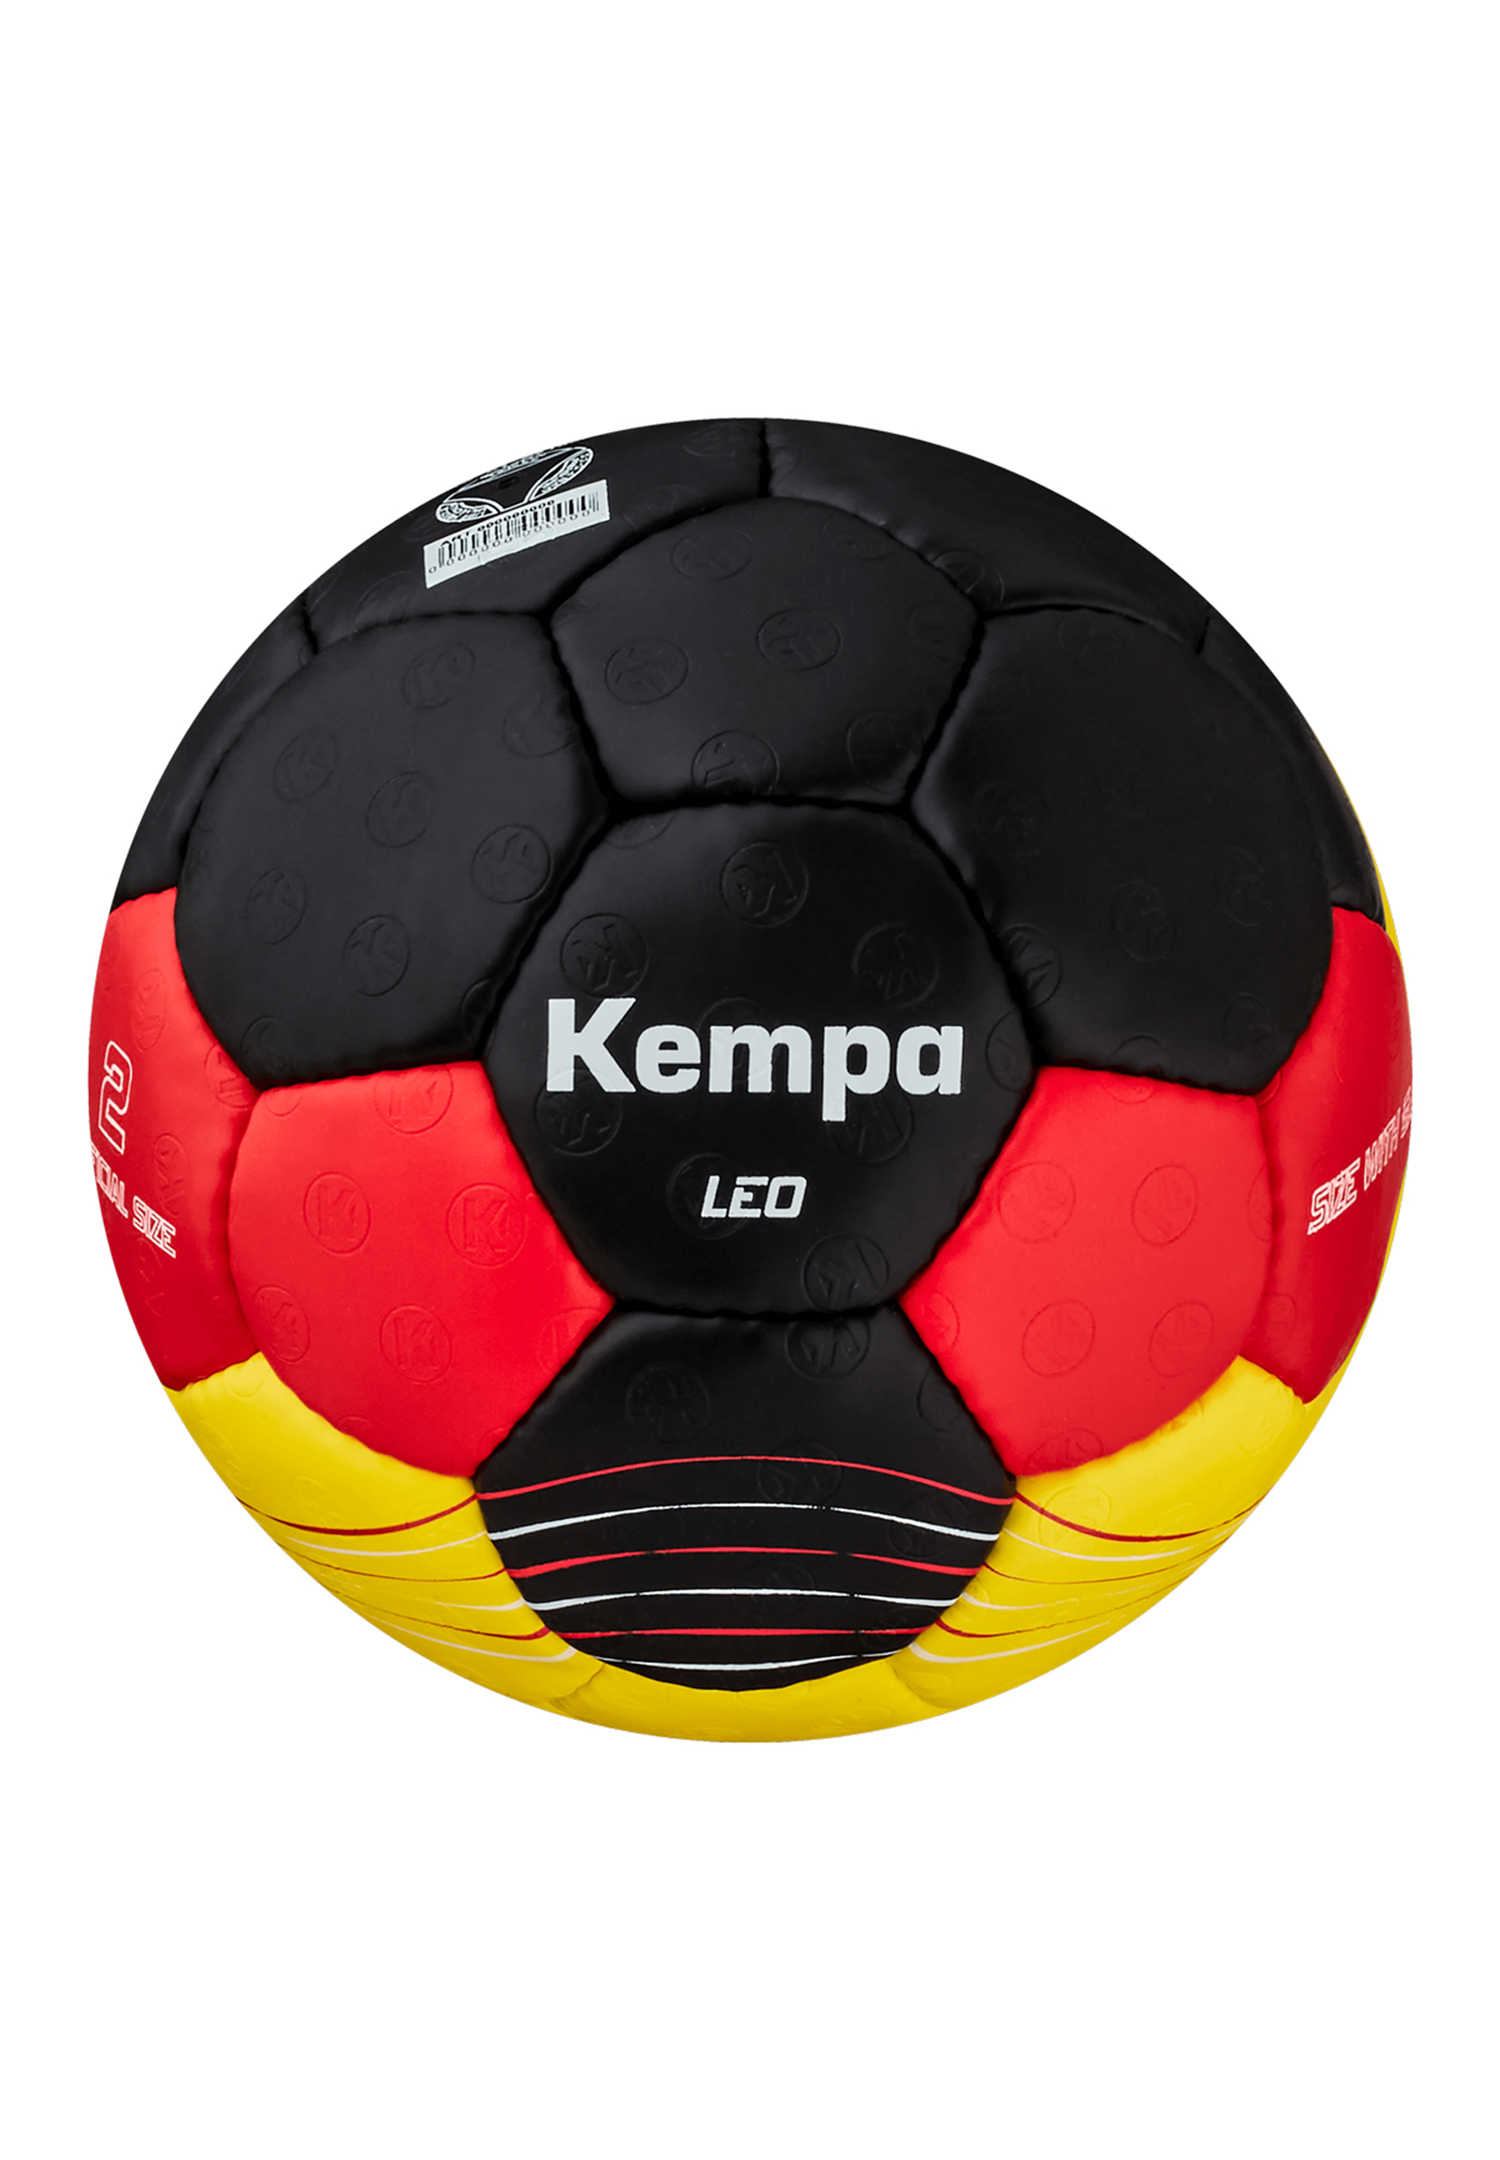 Kempa Handball Leo Team Germany Size 0 200191601 schwarz/rot/gold